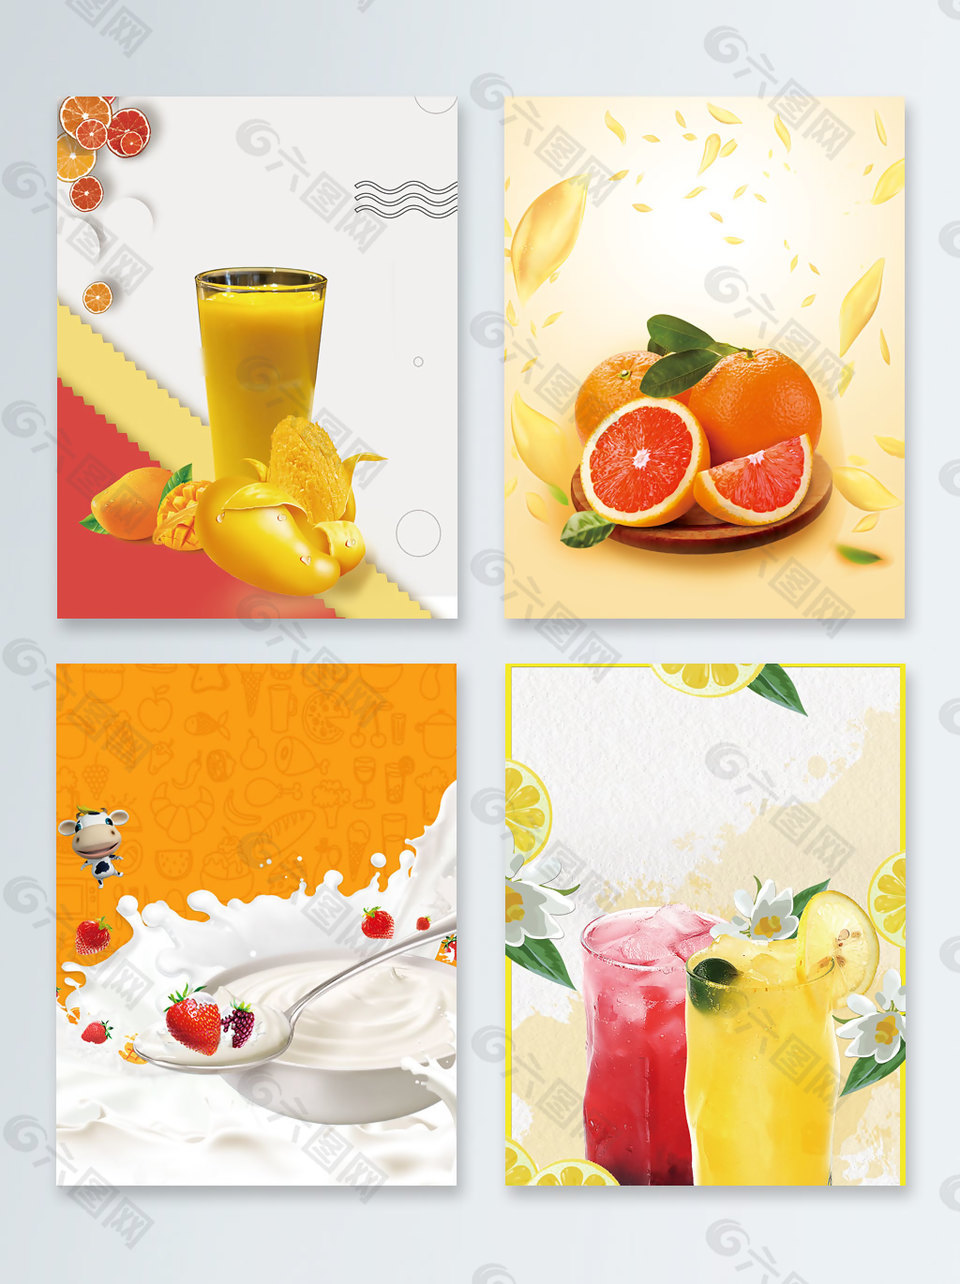 橙子鲜奶夏季促销广告背景